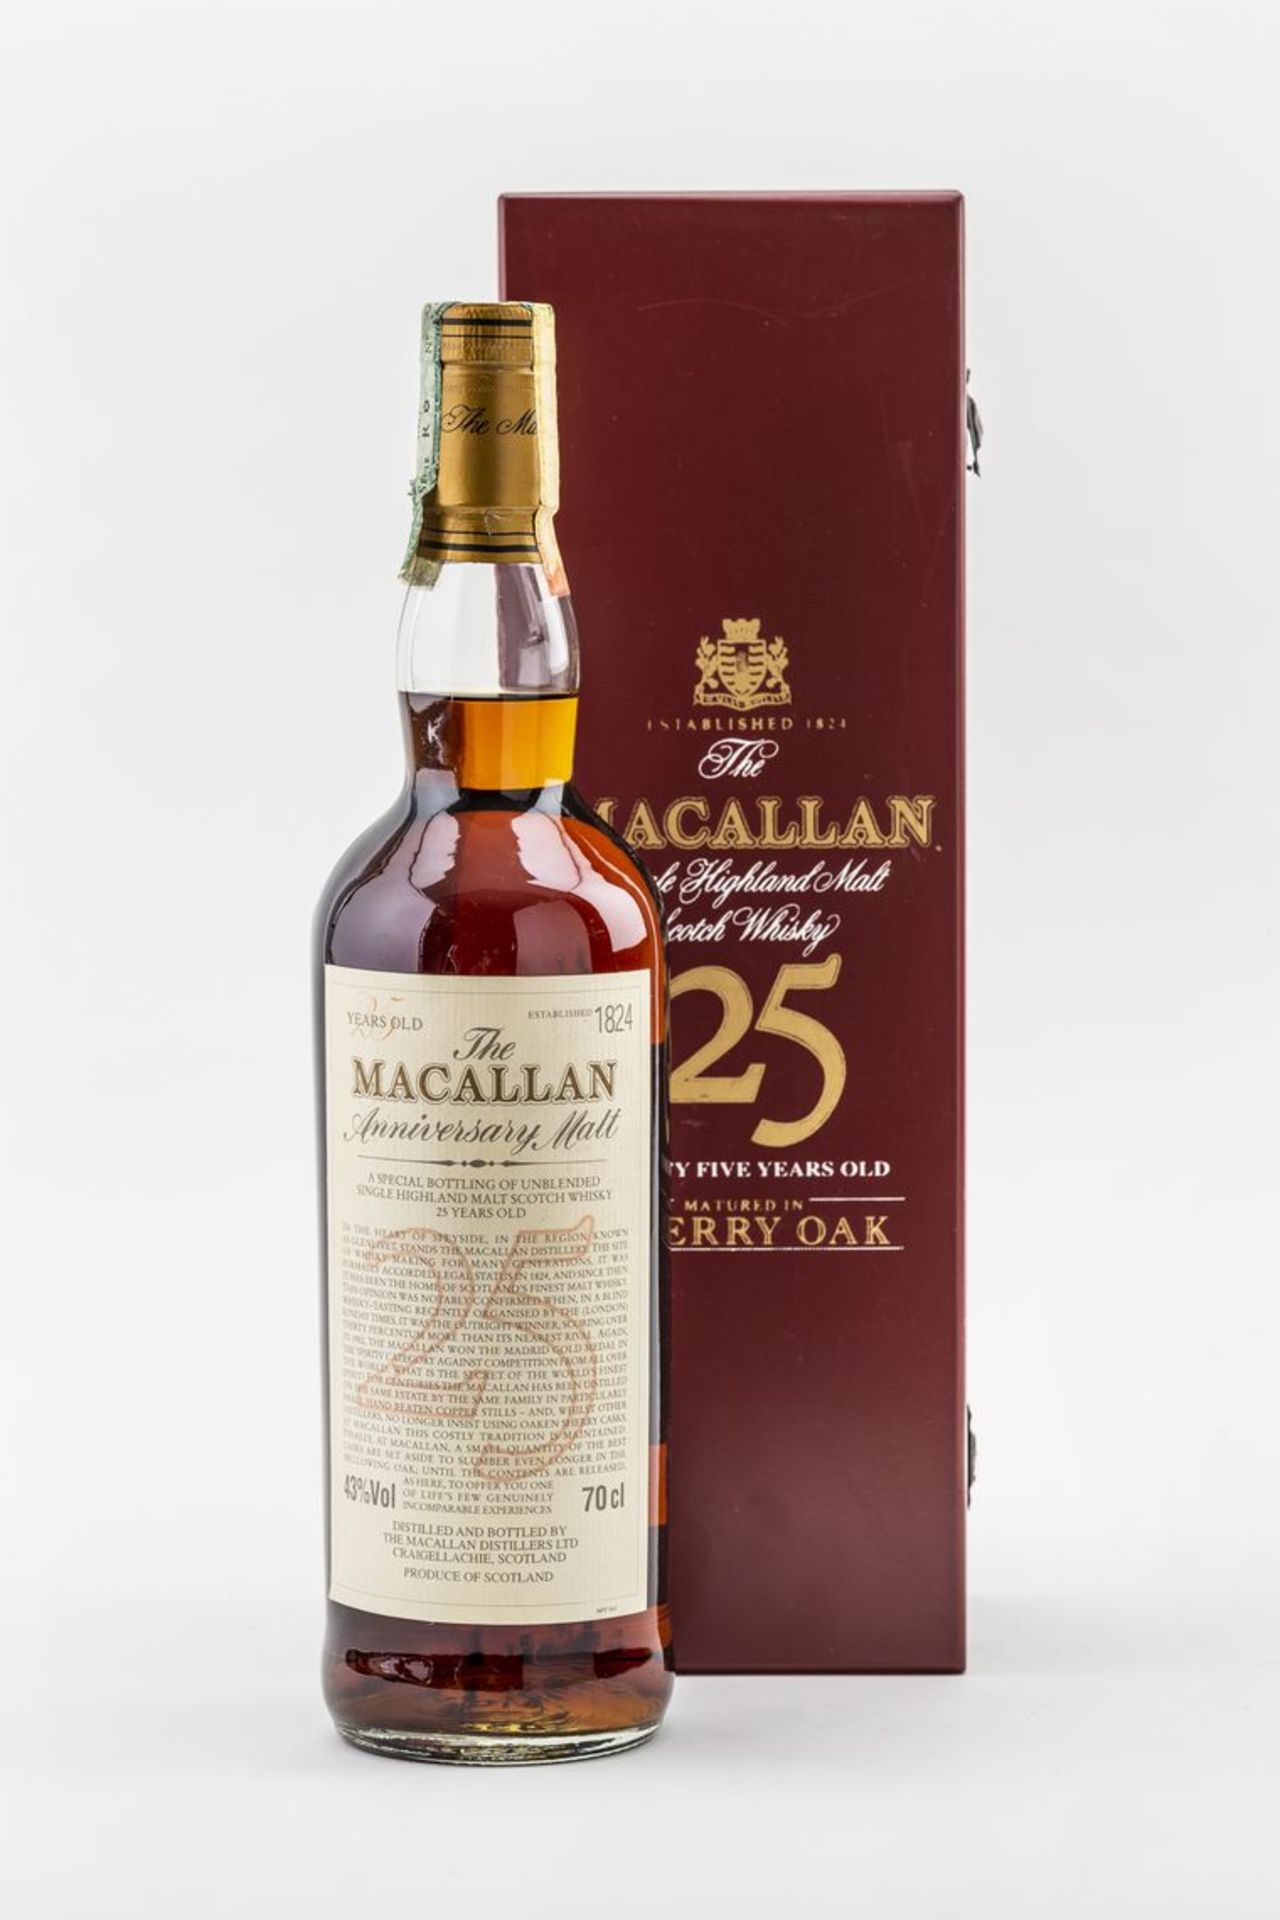 1 Fl. Macallan Scotch Whisky 1975Anniversary Single Highland Malt (im Jahr 2000), 25 years old. (